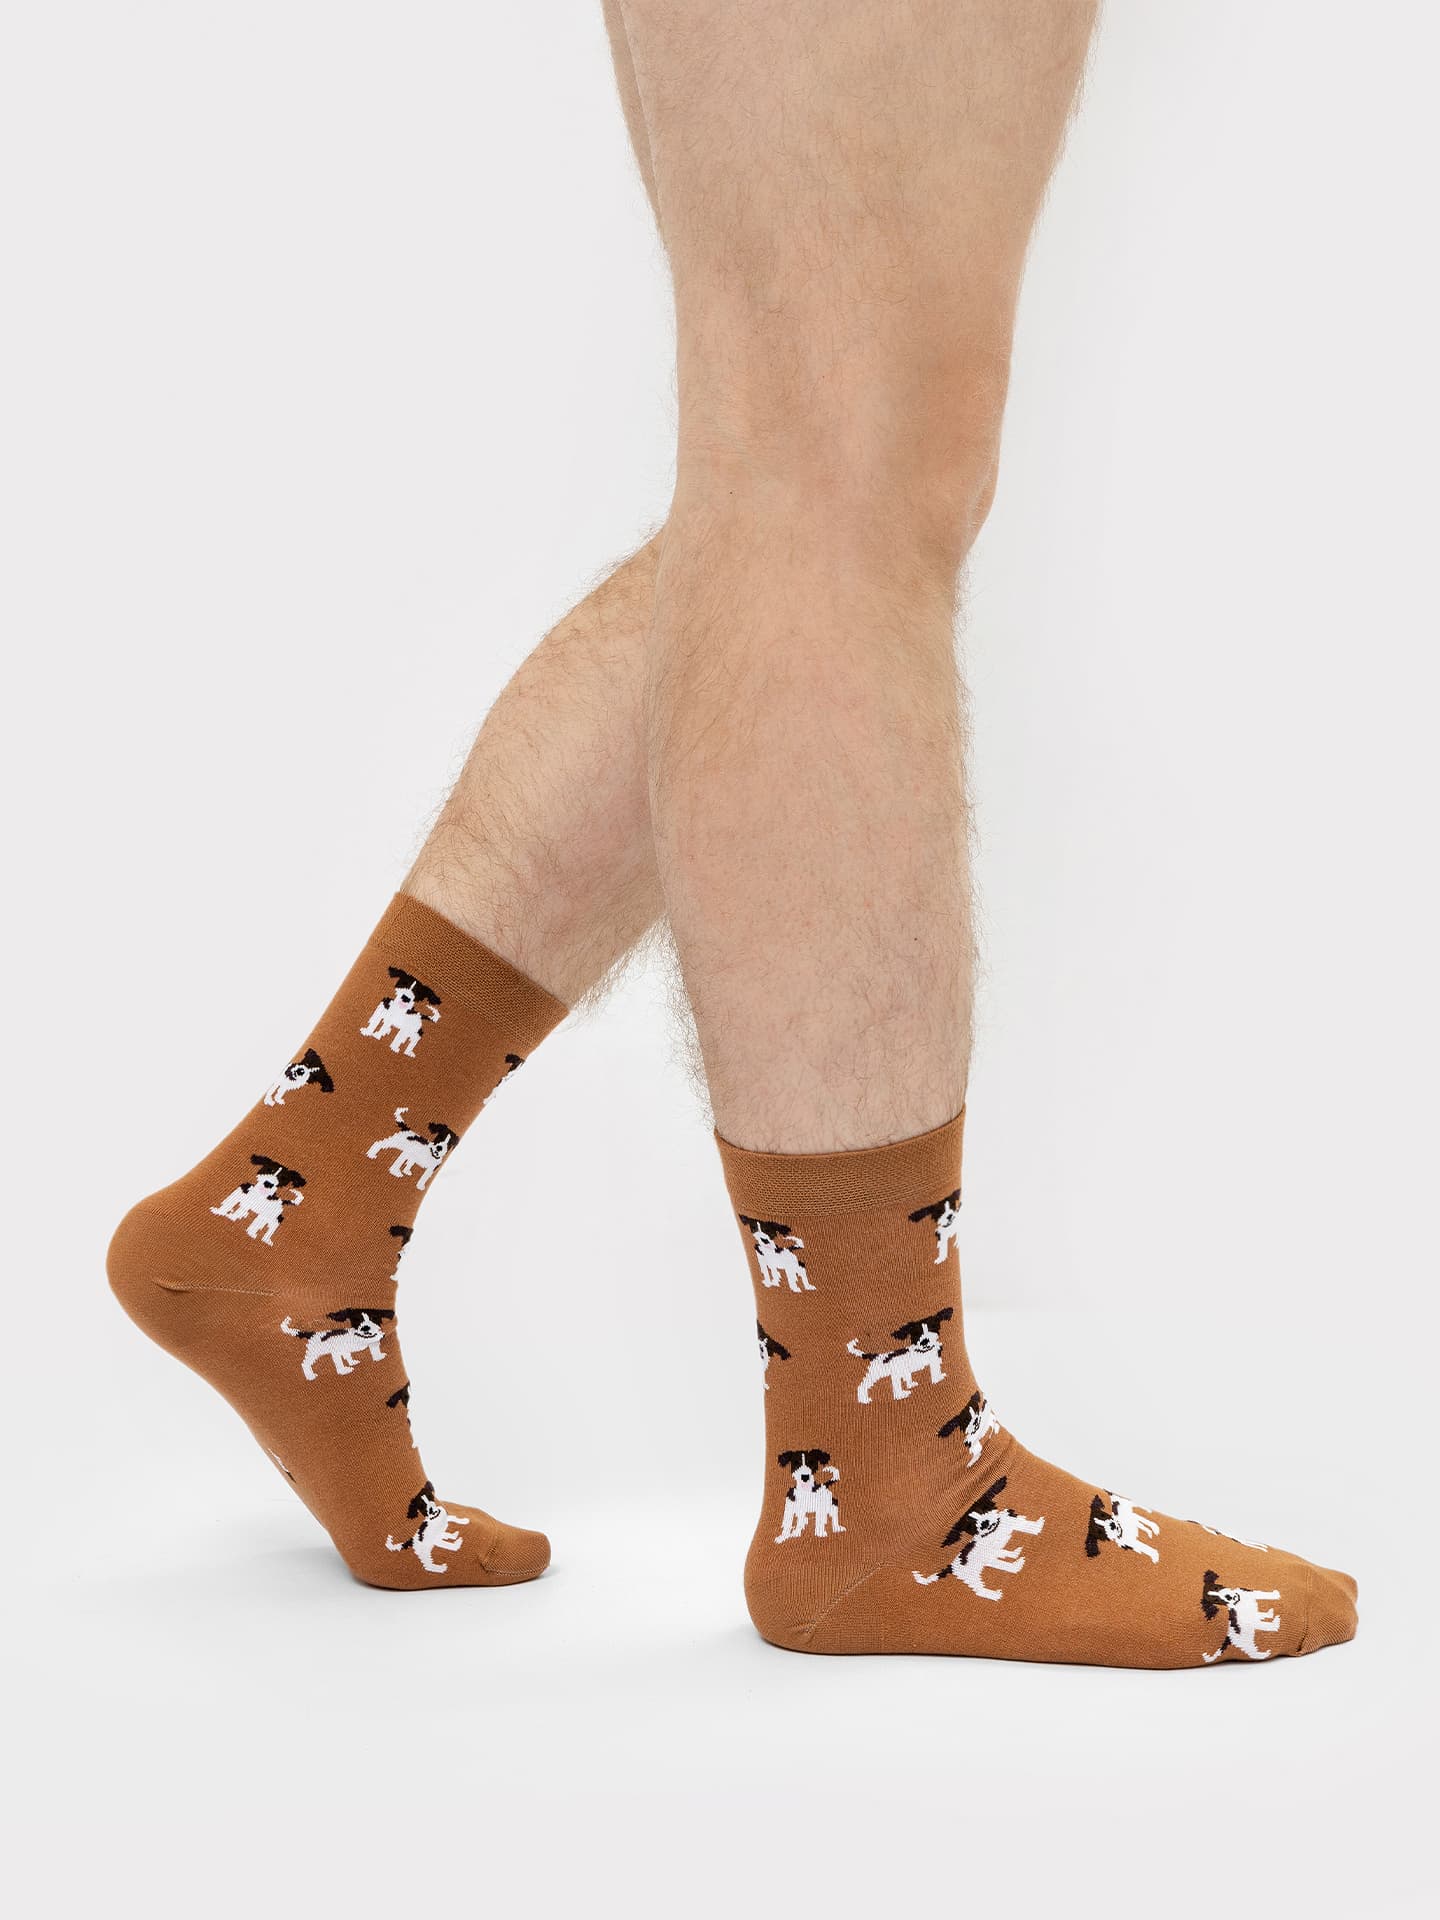 Высокие носки мужские с рисунком собачек в коричневом оттенке